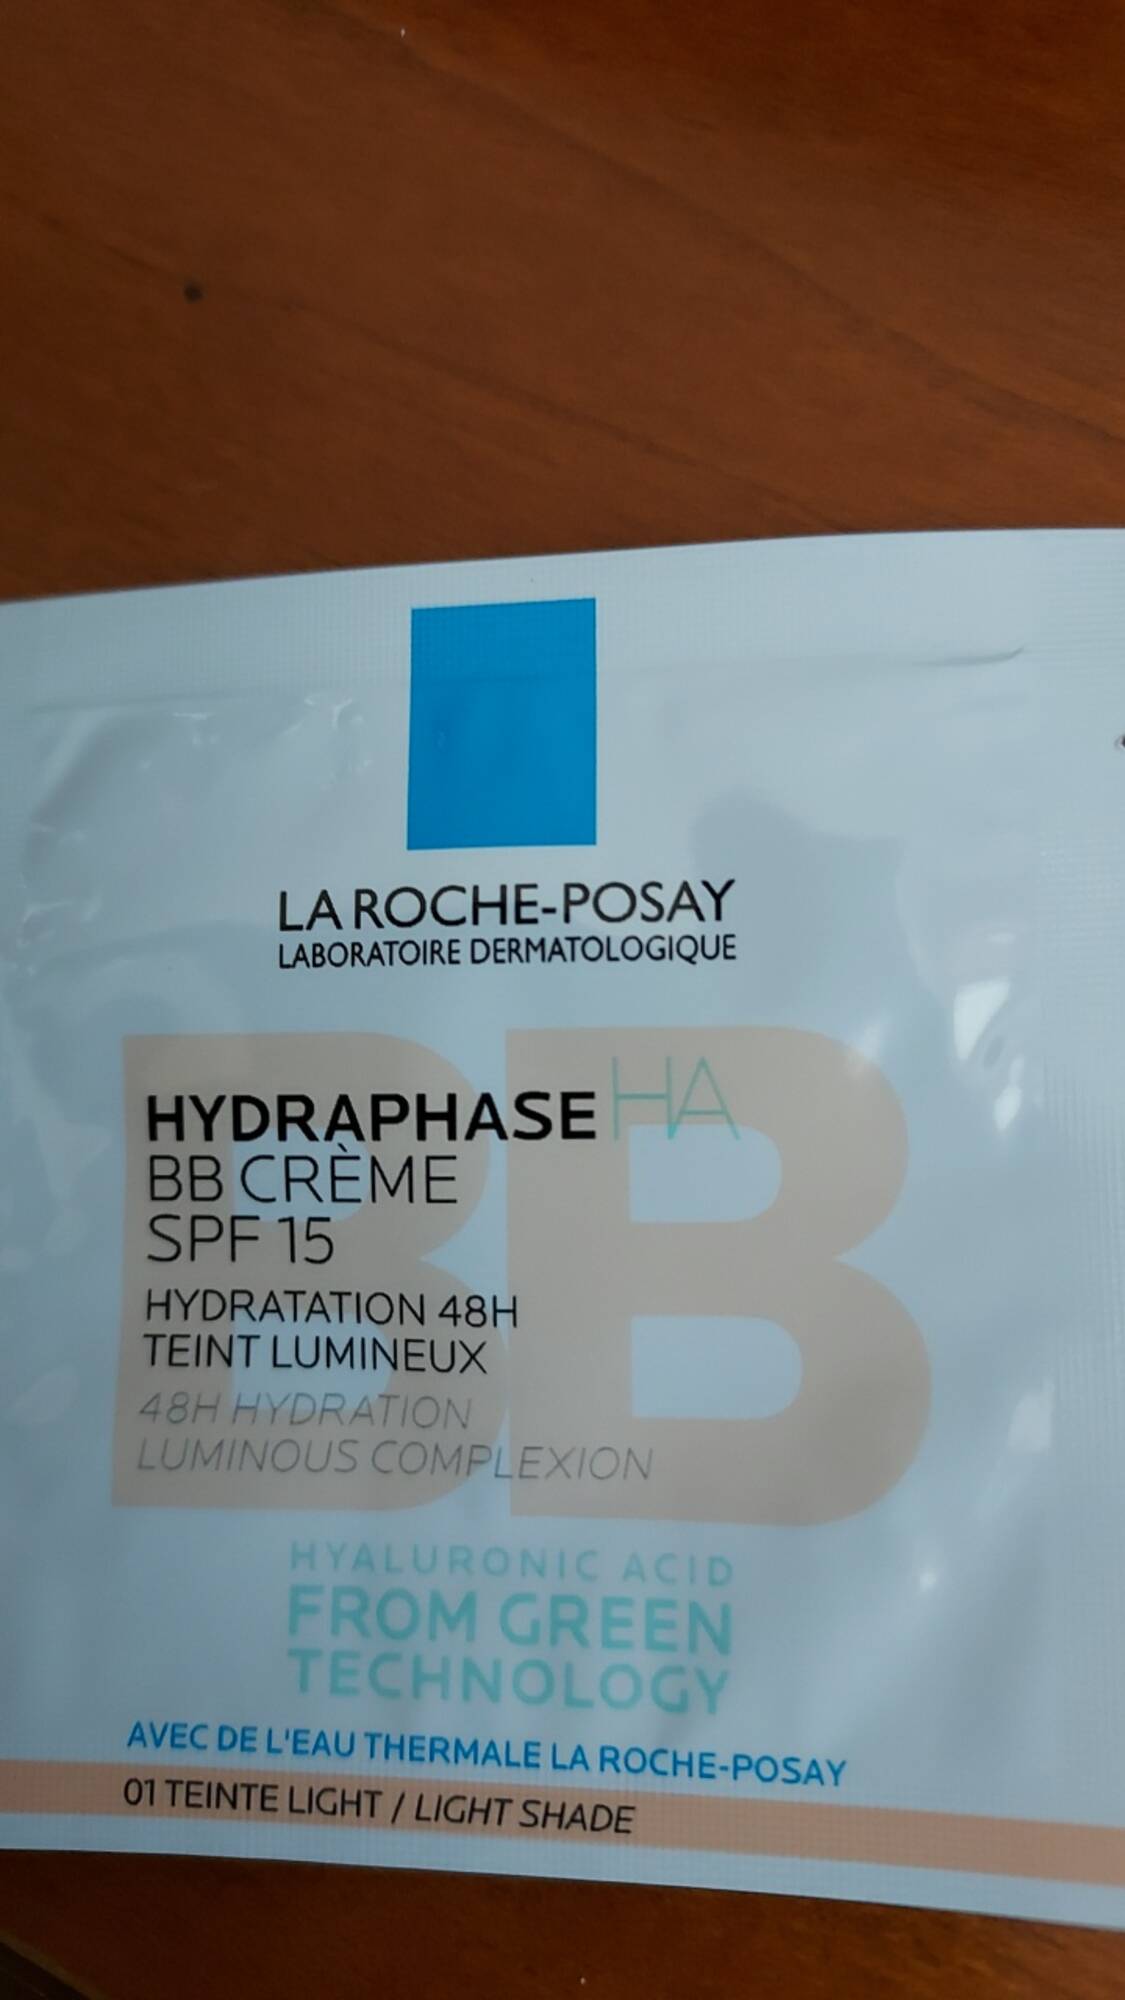 LA ROCHE-POSAY - Hydraphase HA - BB crème SPF 15